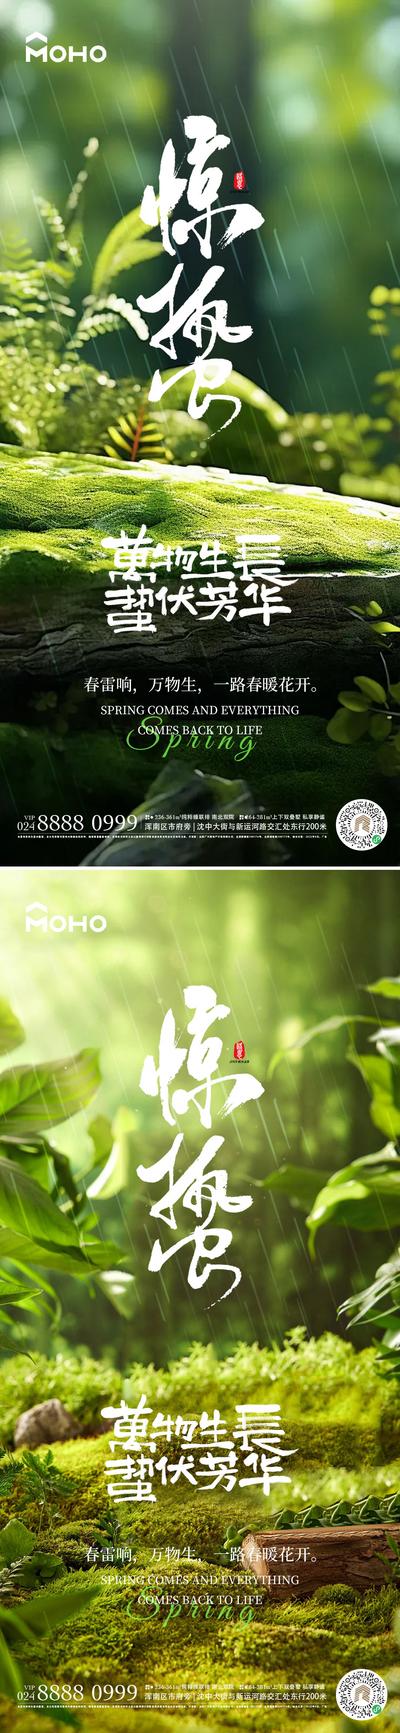 南门网 广告 海报 节气 惊蛰 谷雨 雨水 惊雷 春天 春 24节气 自然 花